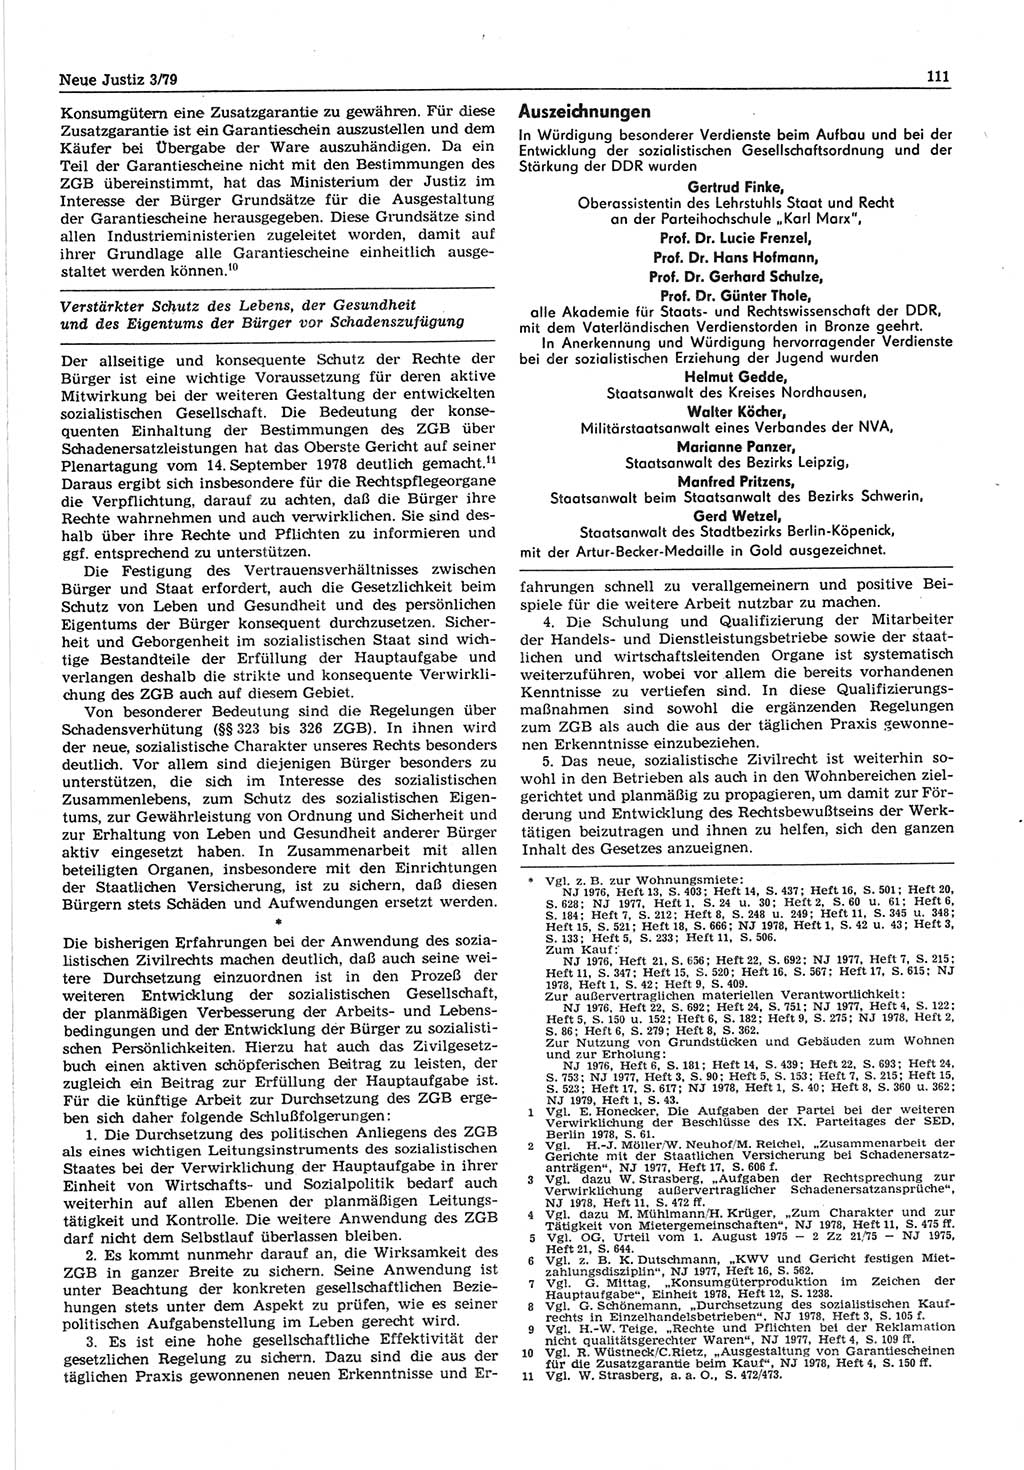 Neue Justiz (NJ), Zeitschrift für sozialistisches Recht und Gesetzlichkeit [Deutsche Demokratische Republik (DDR)], 33. Jahrgang 1979, Seite 111 (NJ DDR 1979, S. 111)